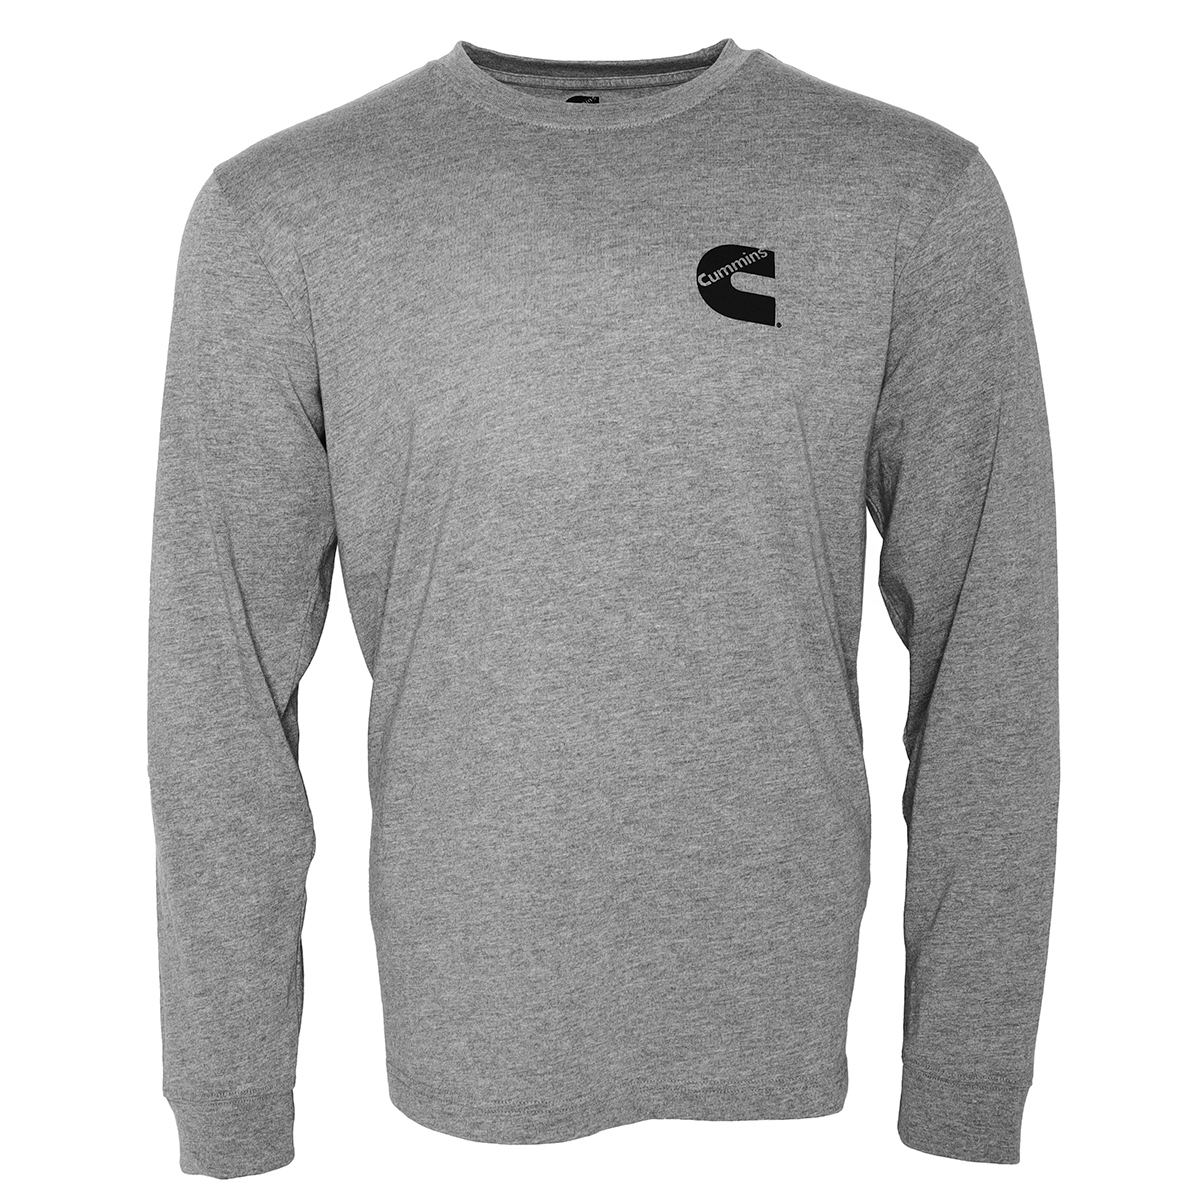 Cummins Unisex Long Sleeve T-shirt Cotton Blend Tee in Sport Gray CMN4785 - XL